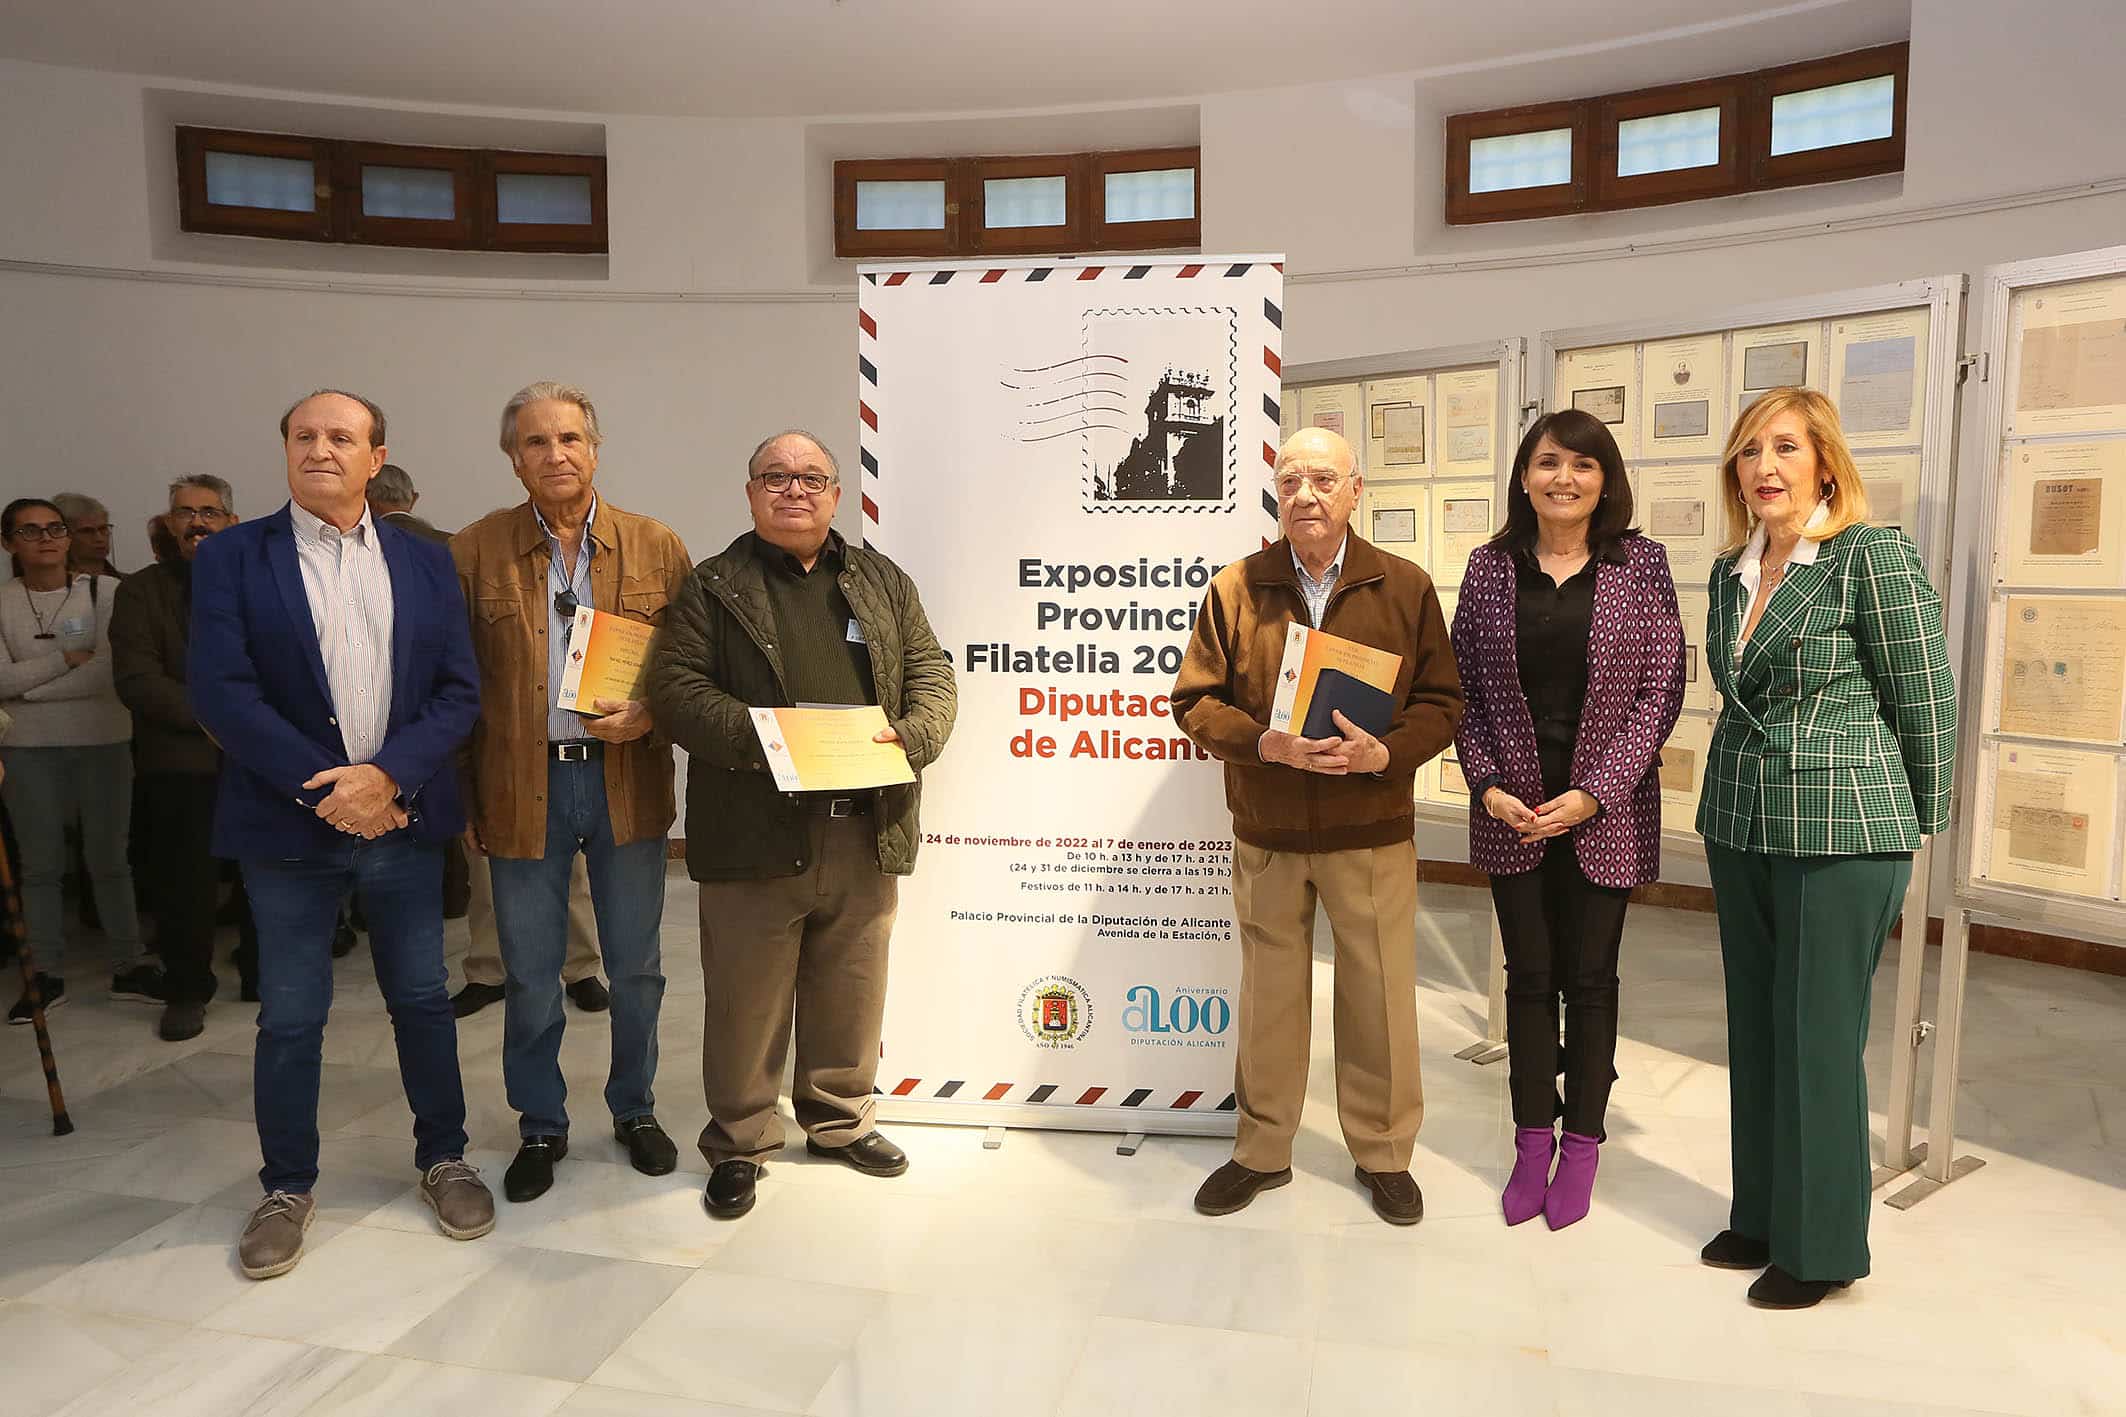 La Diputación inaugura la XXIII Exposición Provincial de Filatelia con más de 9.000 sellos que recorren la historia alicantina